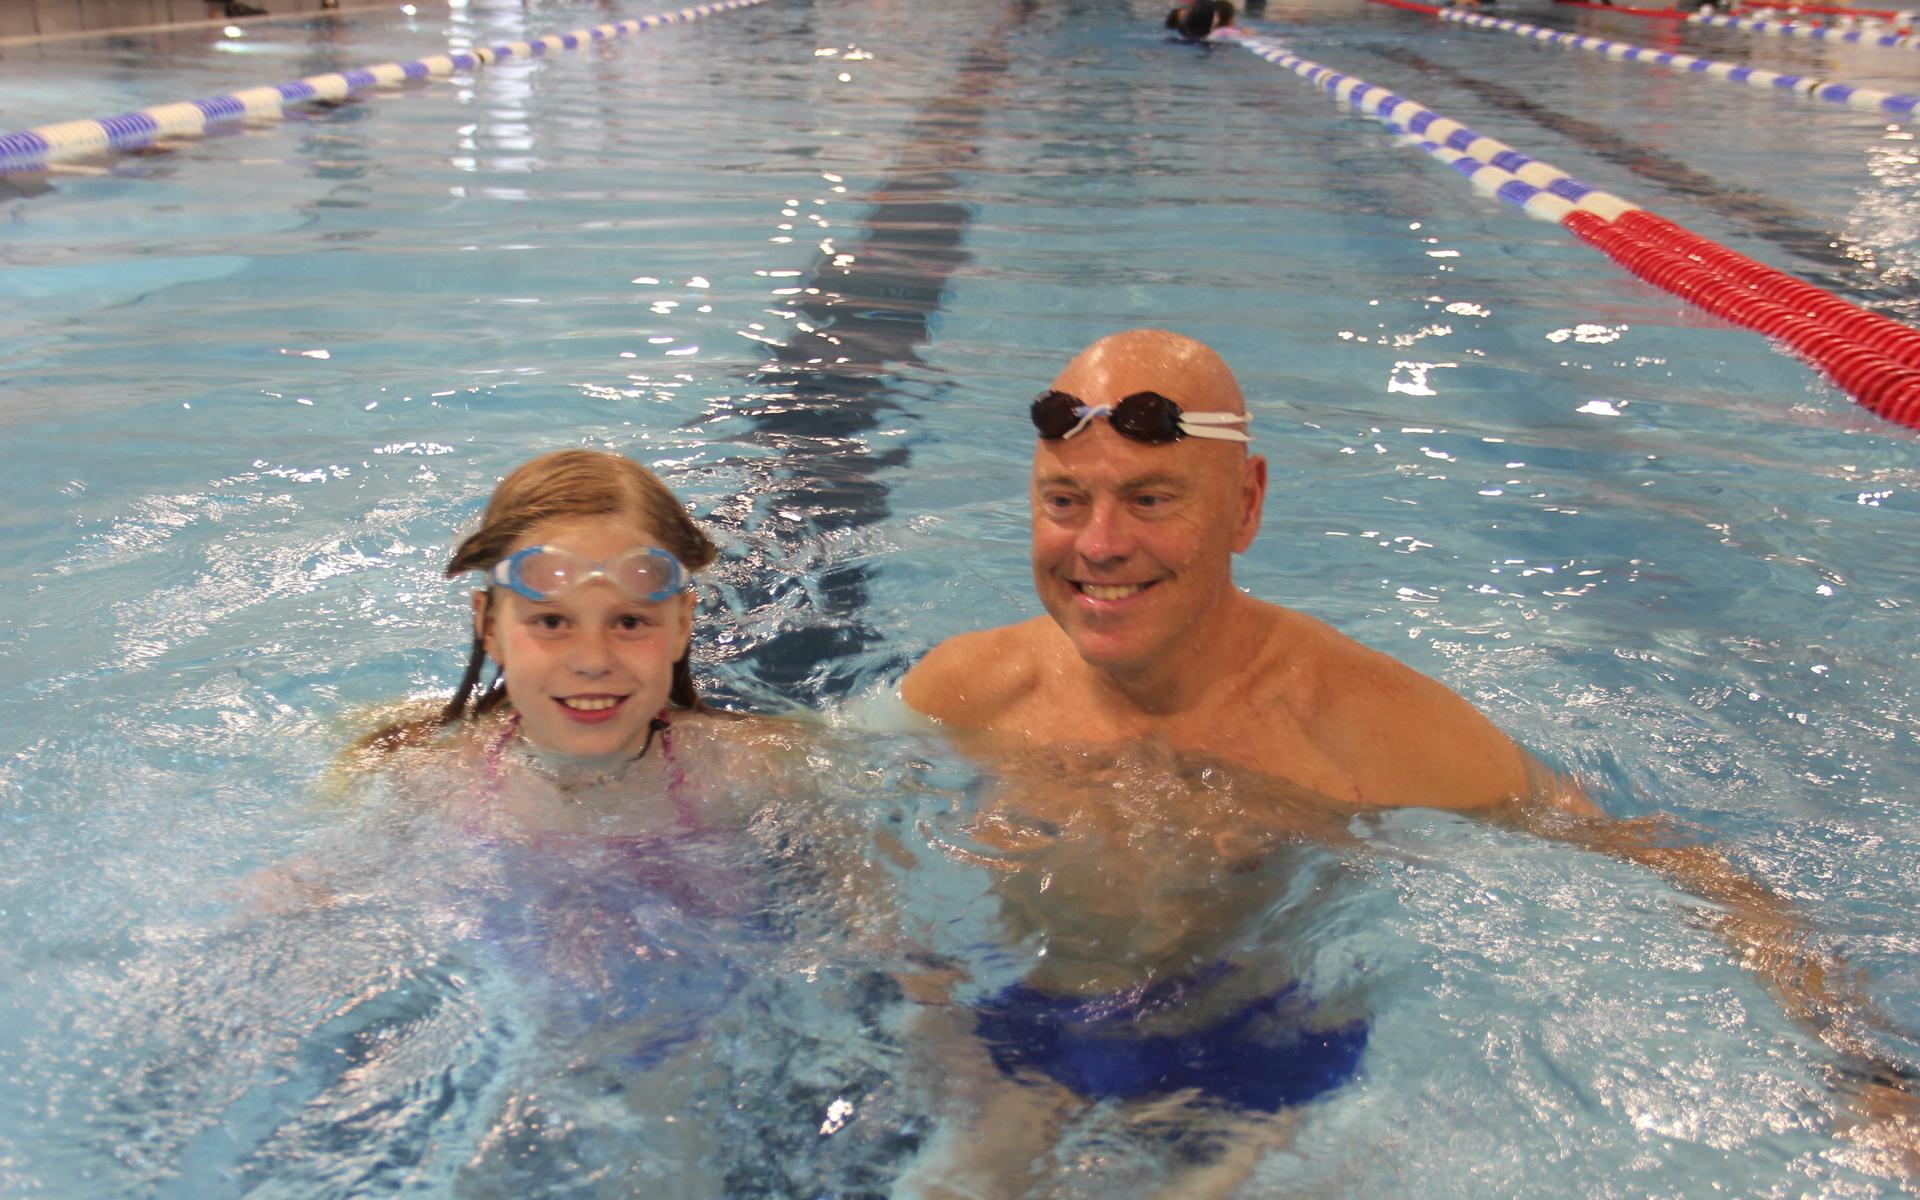 Maya Berggren besökte simhallen med pappa Roger Berggren. Pappa tycker nästan lika mycket om att simma som dottern – men kanske behöver öva lite på tekniken. ”Det plaskar mycket om dig”, skrattar Maya. 